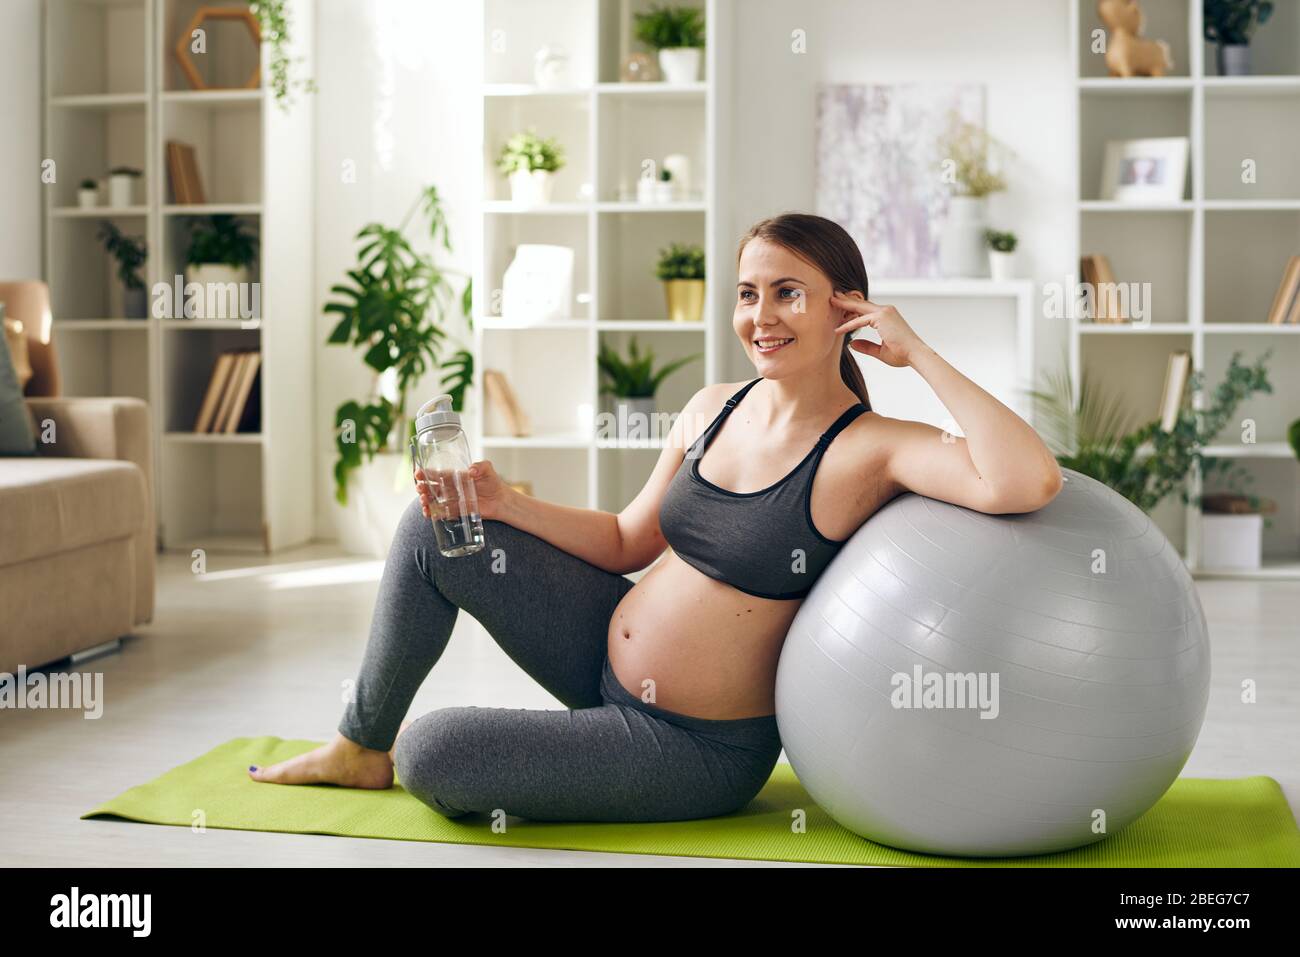 Sonriendo mujer embarazada joven y sana en ropa deportiva sentada en la esterilla de yoga y apoyada en el fitball mientras bebía agua en casa Foto de stock